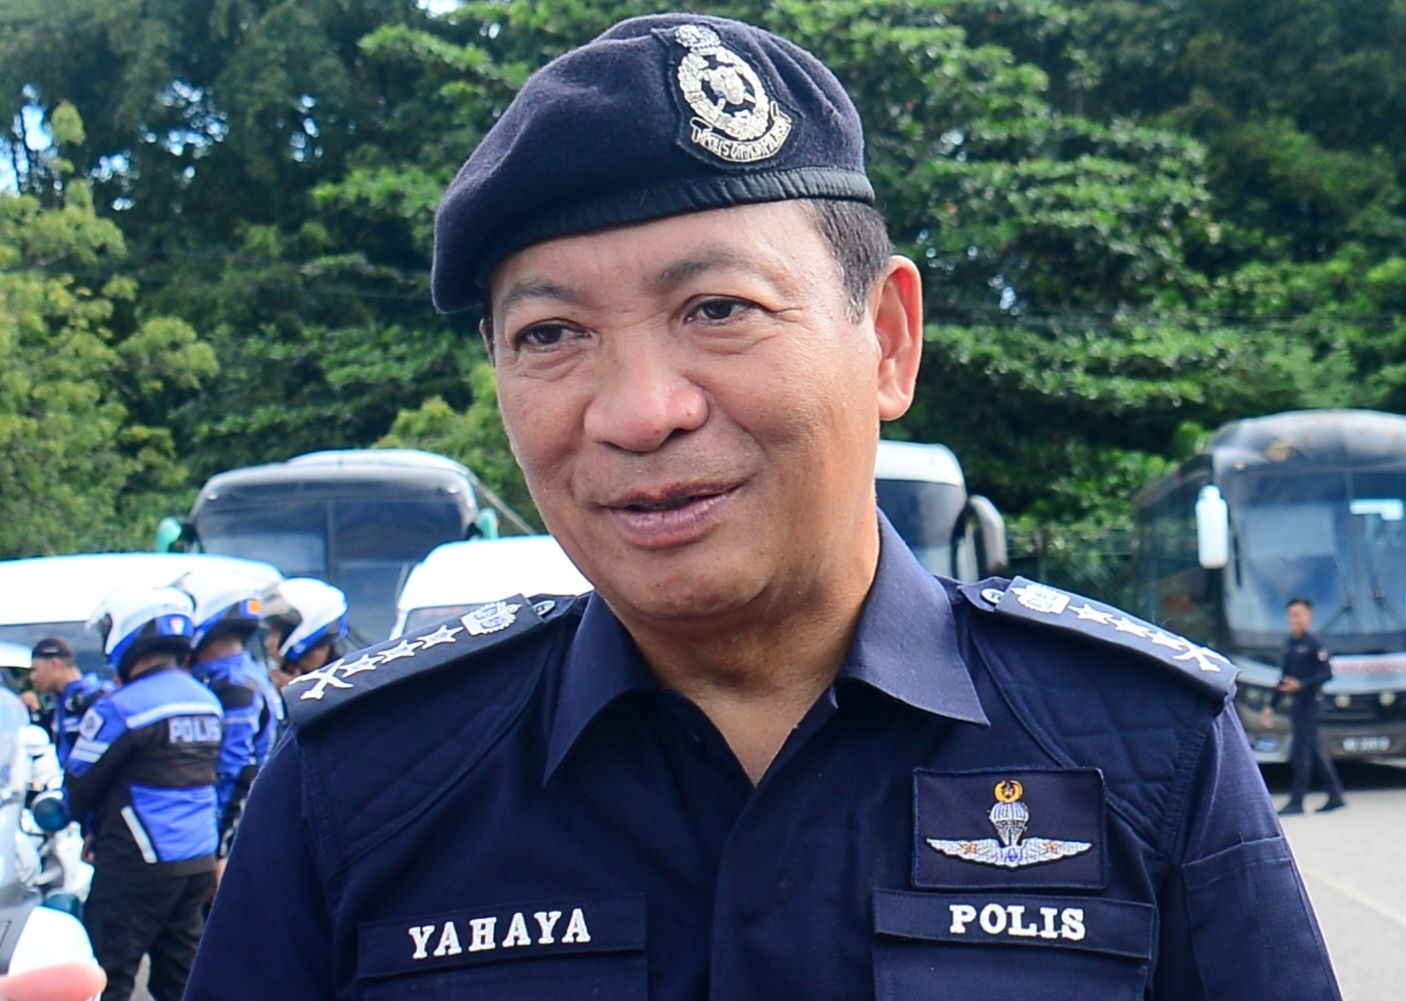 Pahang police chief datuk seri yahaya othman